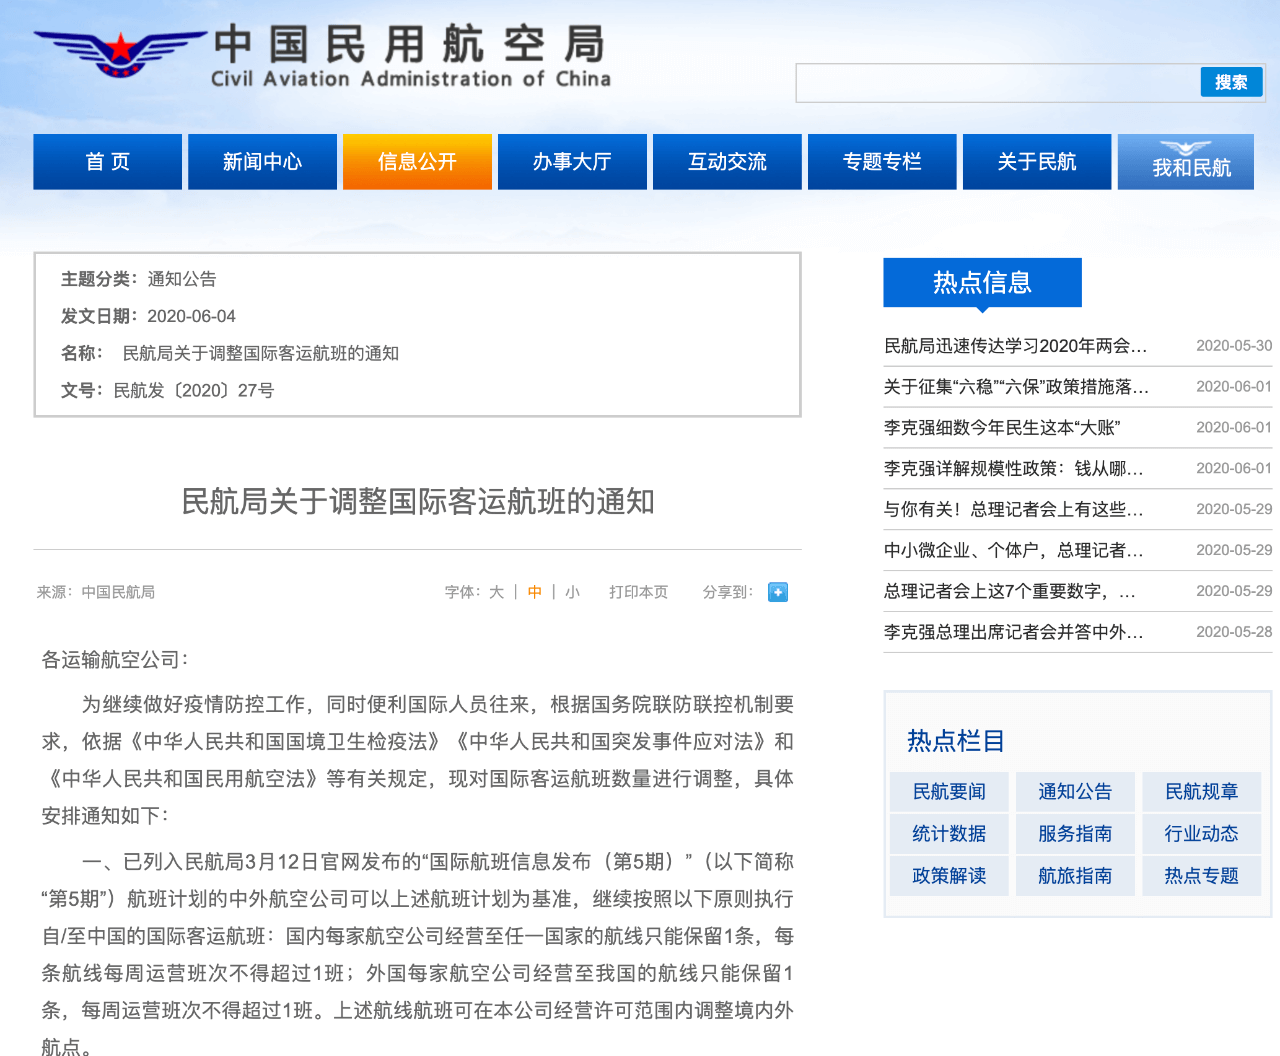 中国民用航空局发布调整国际客运航班的通知